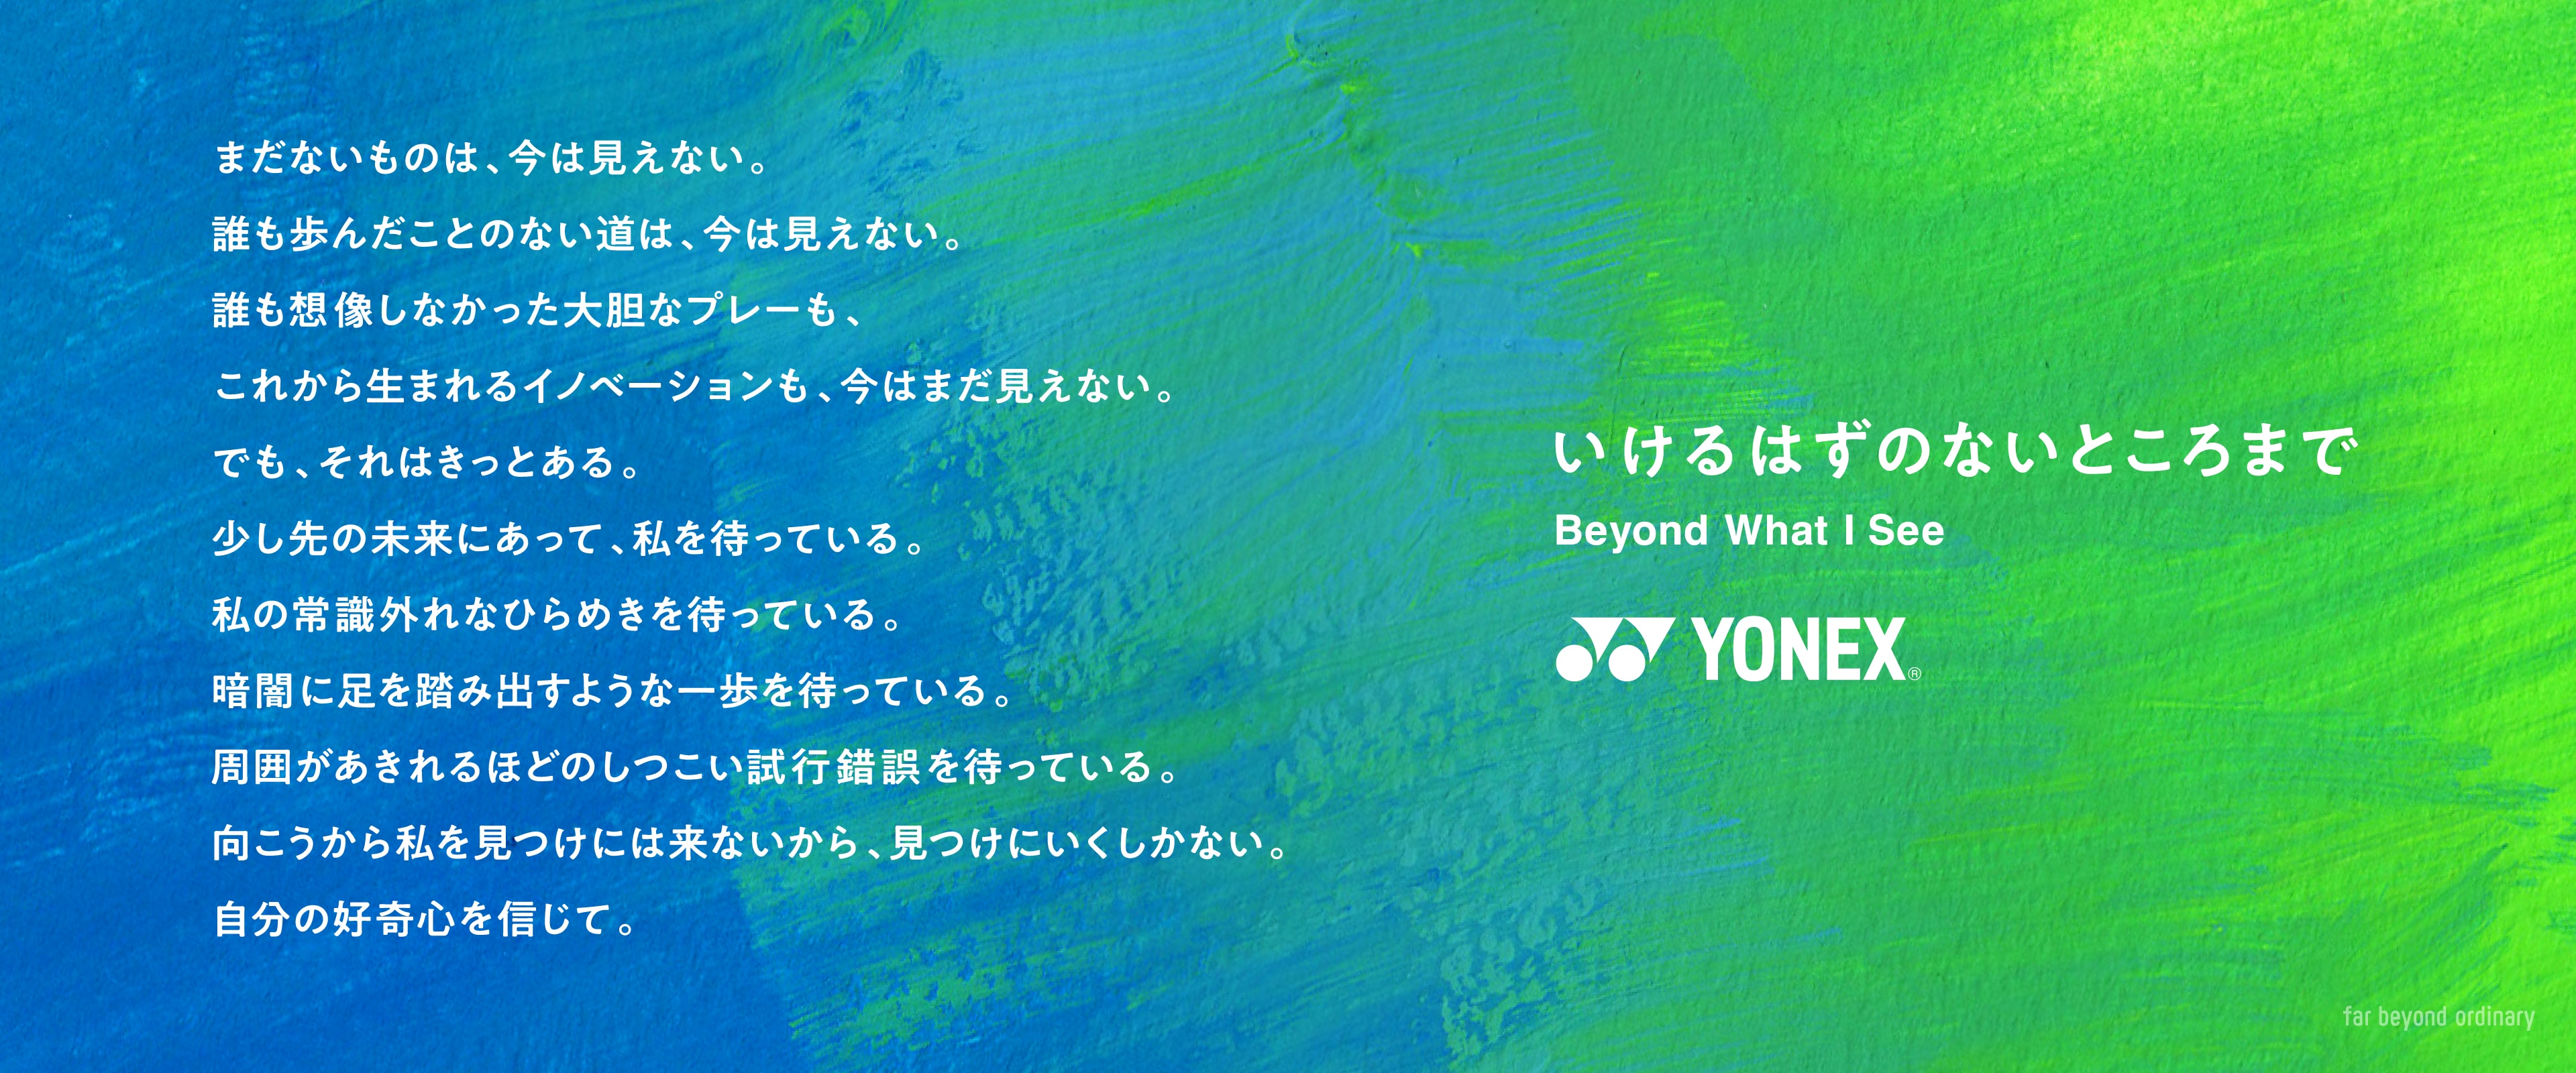 www.yonex.co.jp/upload/top/mv_pc.jpg